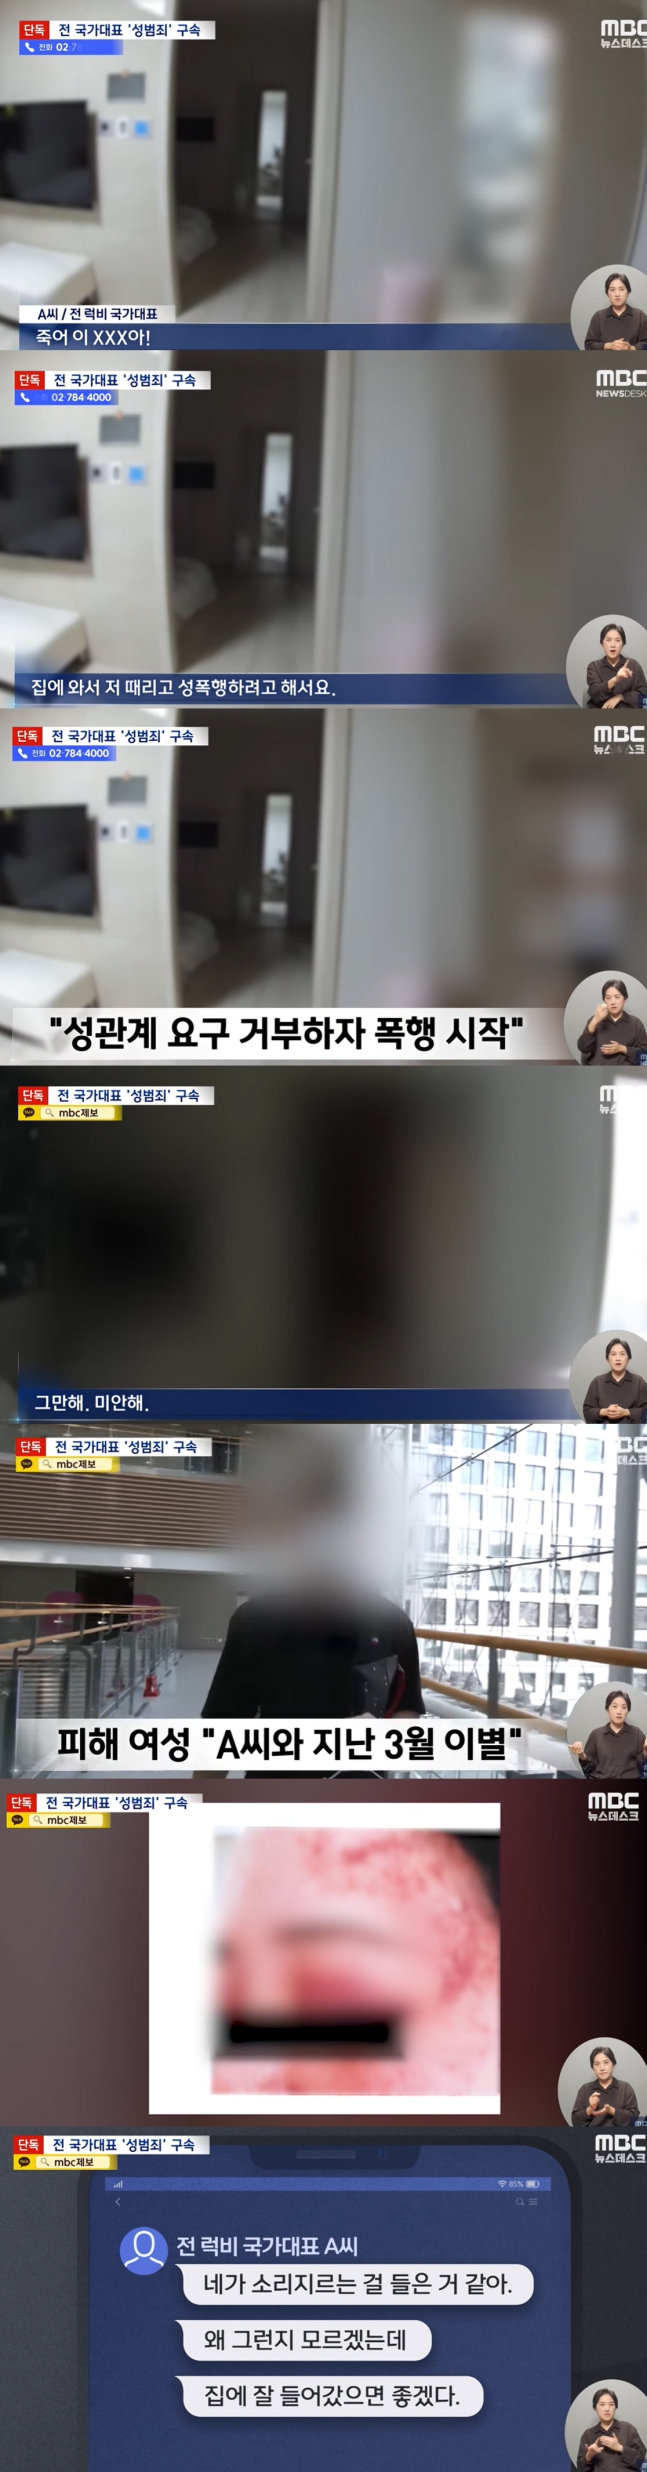 Sốc: Cựu tuyển thủ bóng bầu dục Hàn Quốc bị bắt vì hiếp dâm và hành hung người yêu cũ, tin nhắn của kẻ thủ ác gây phẫn nộ - Ảnh 3.